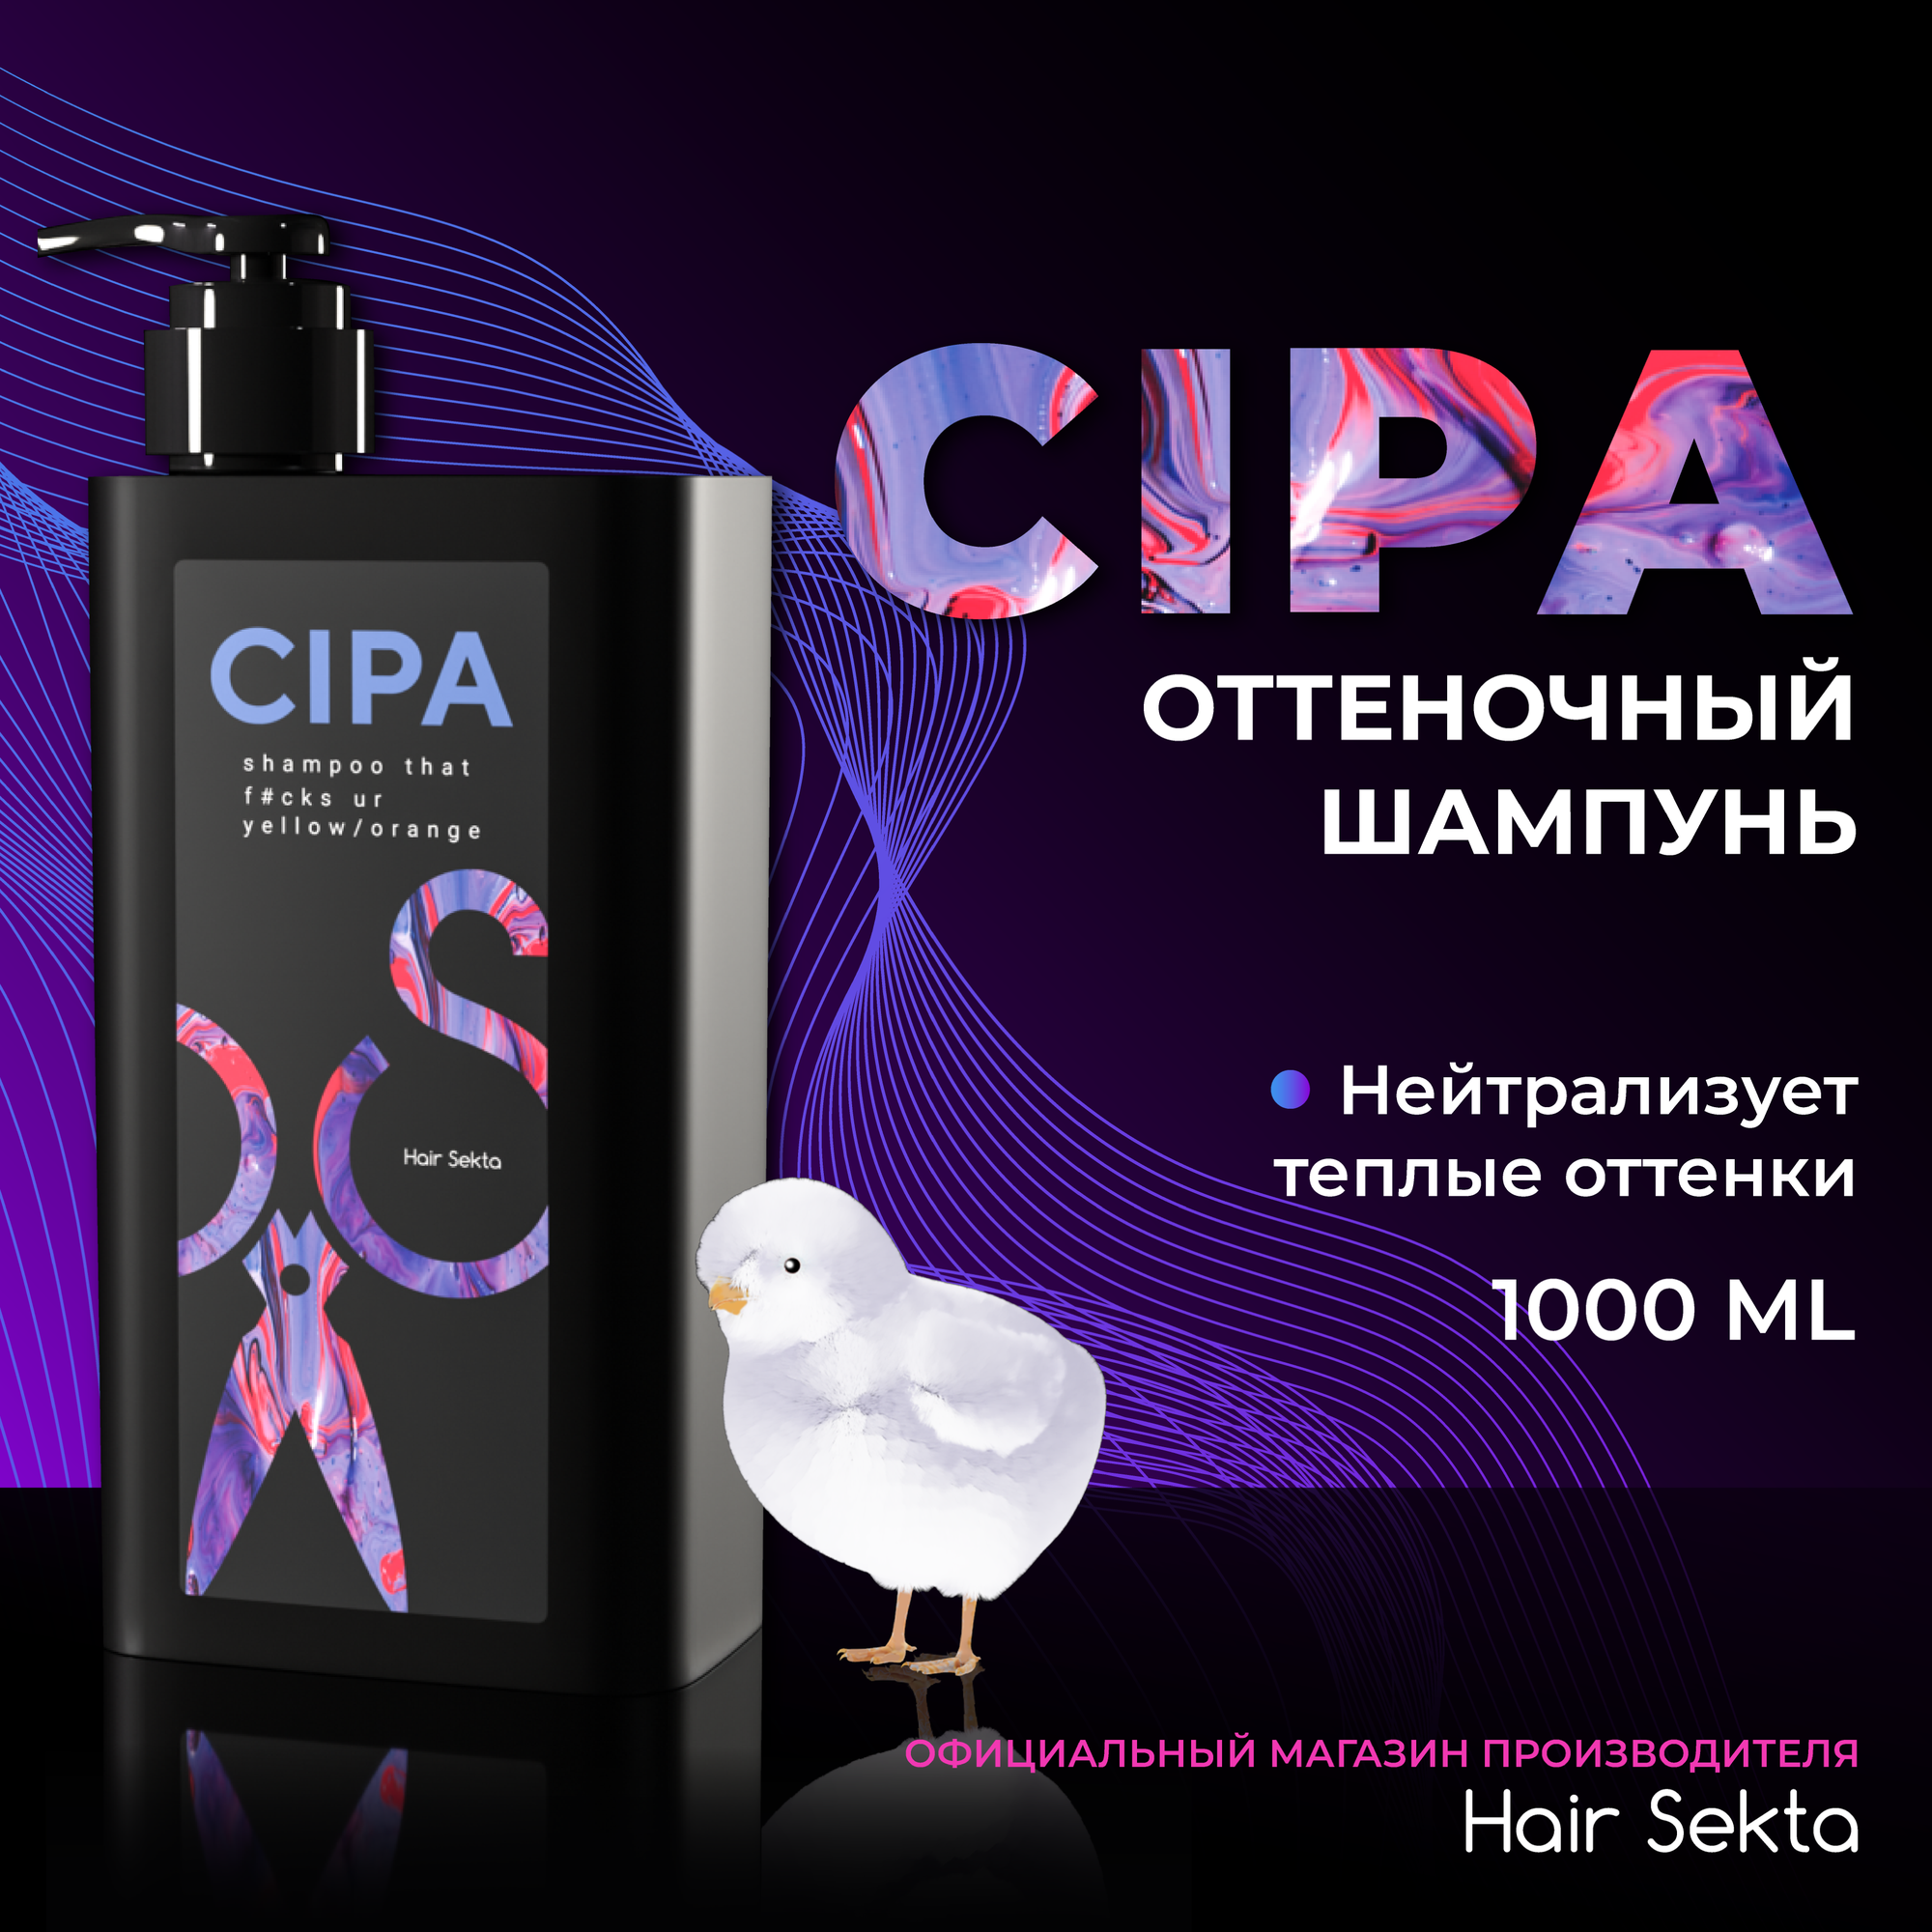 Оттеночный шампунь CIPA от Hair Sekta (1000мл)